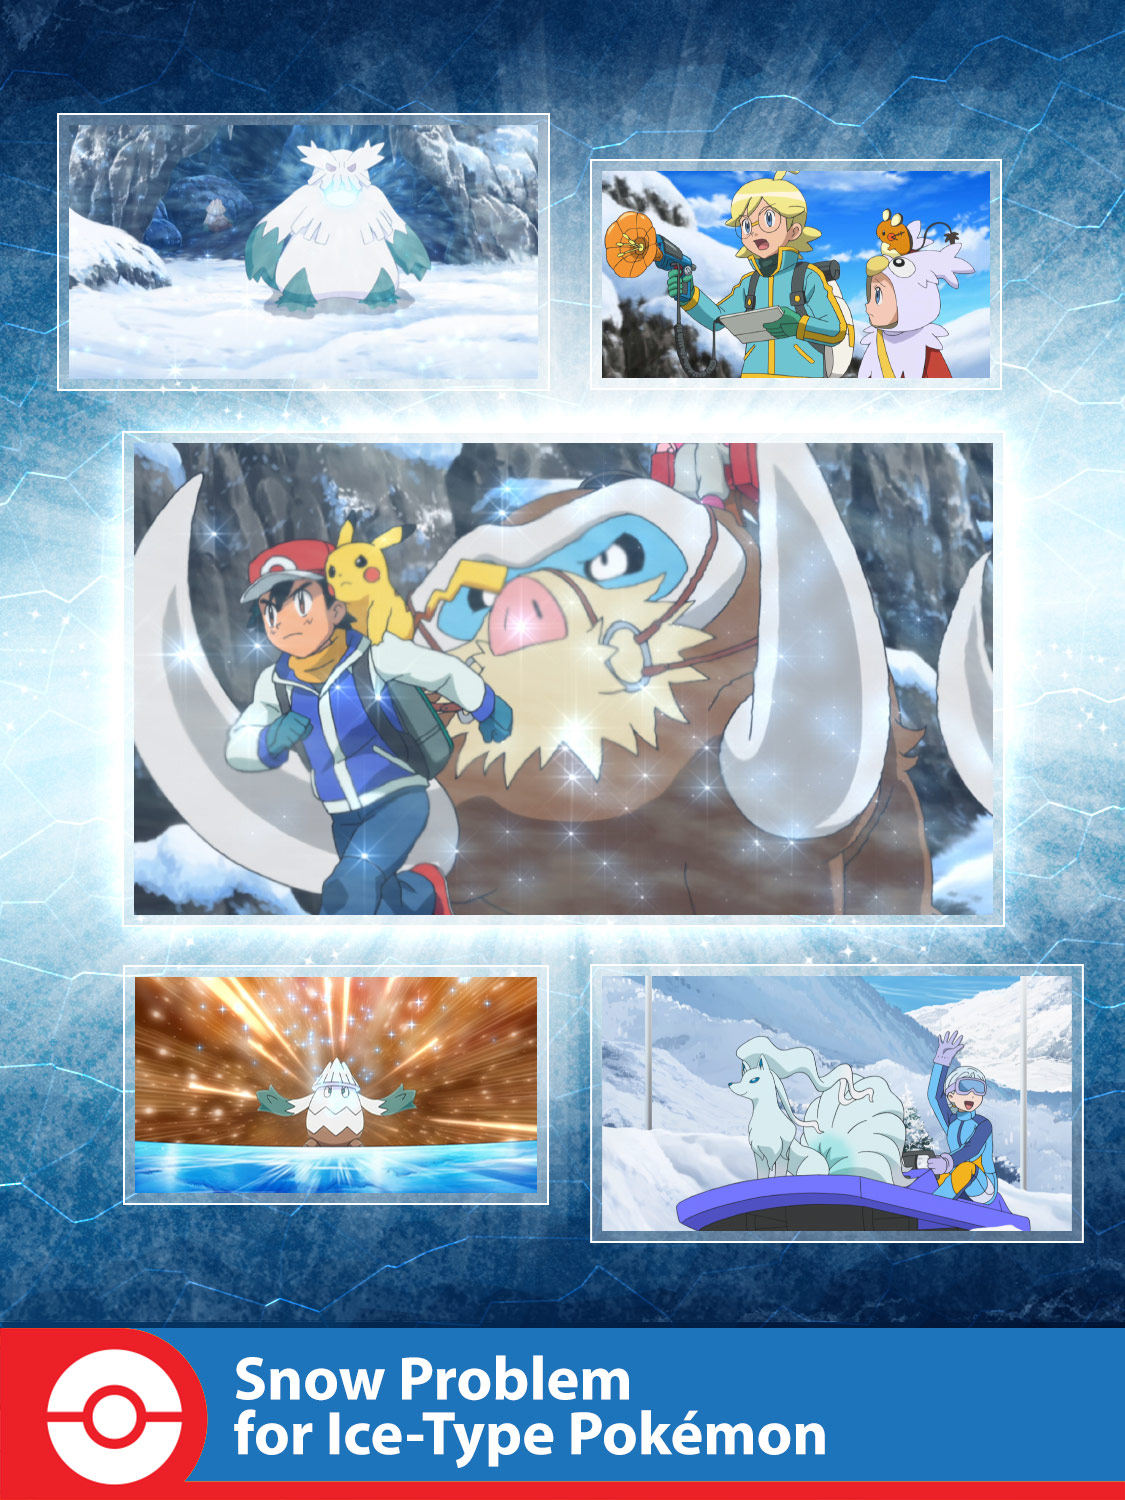 Snow Problem for Ice-Type Pokémon